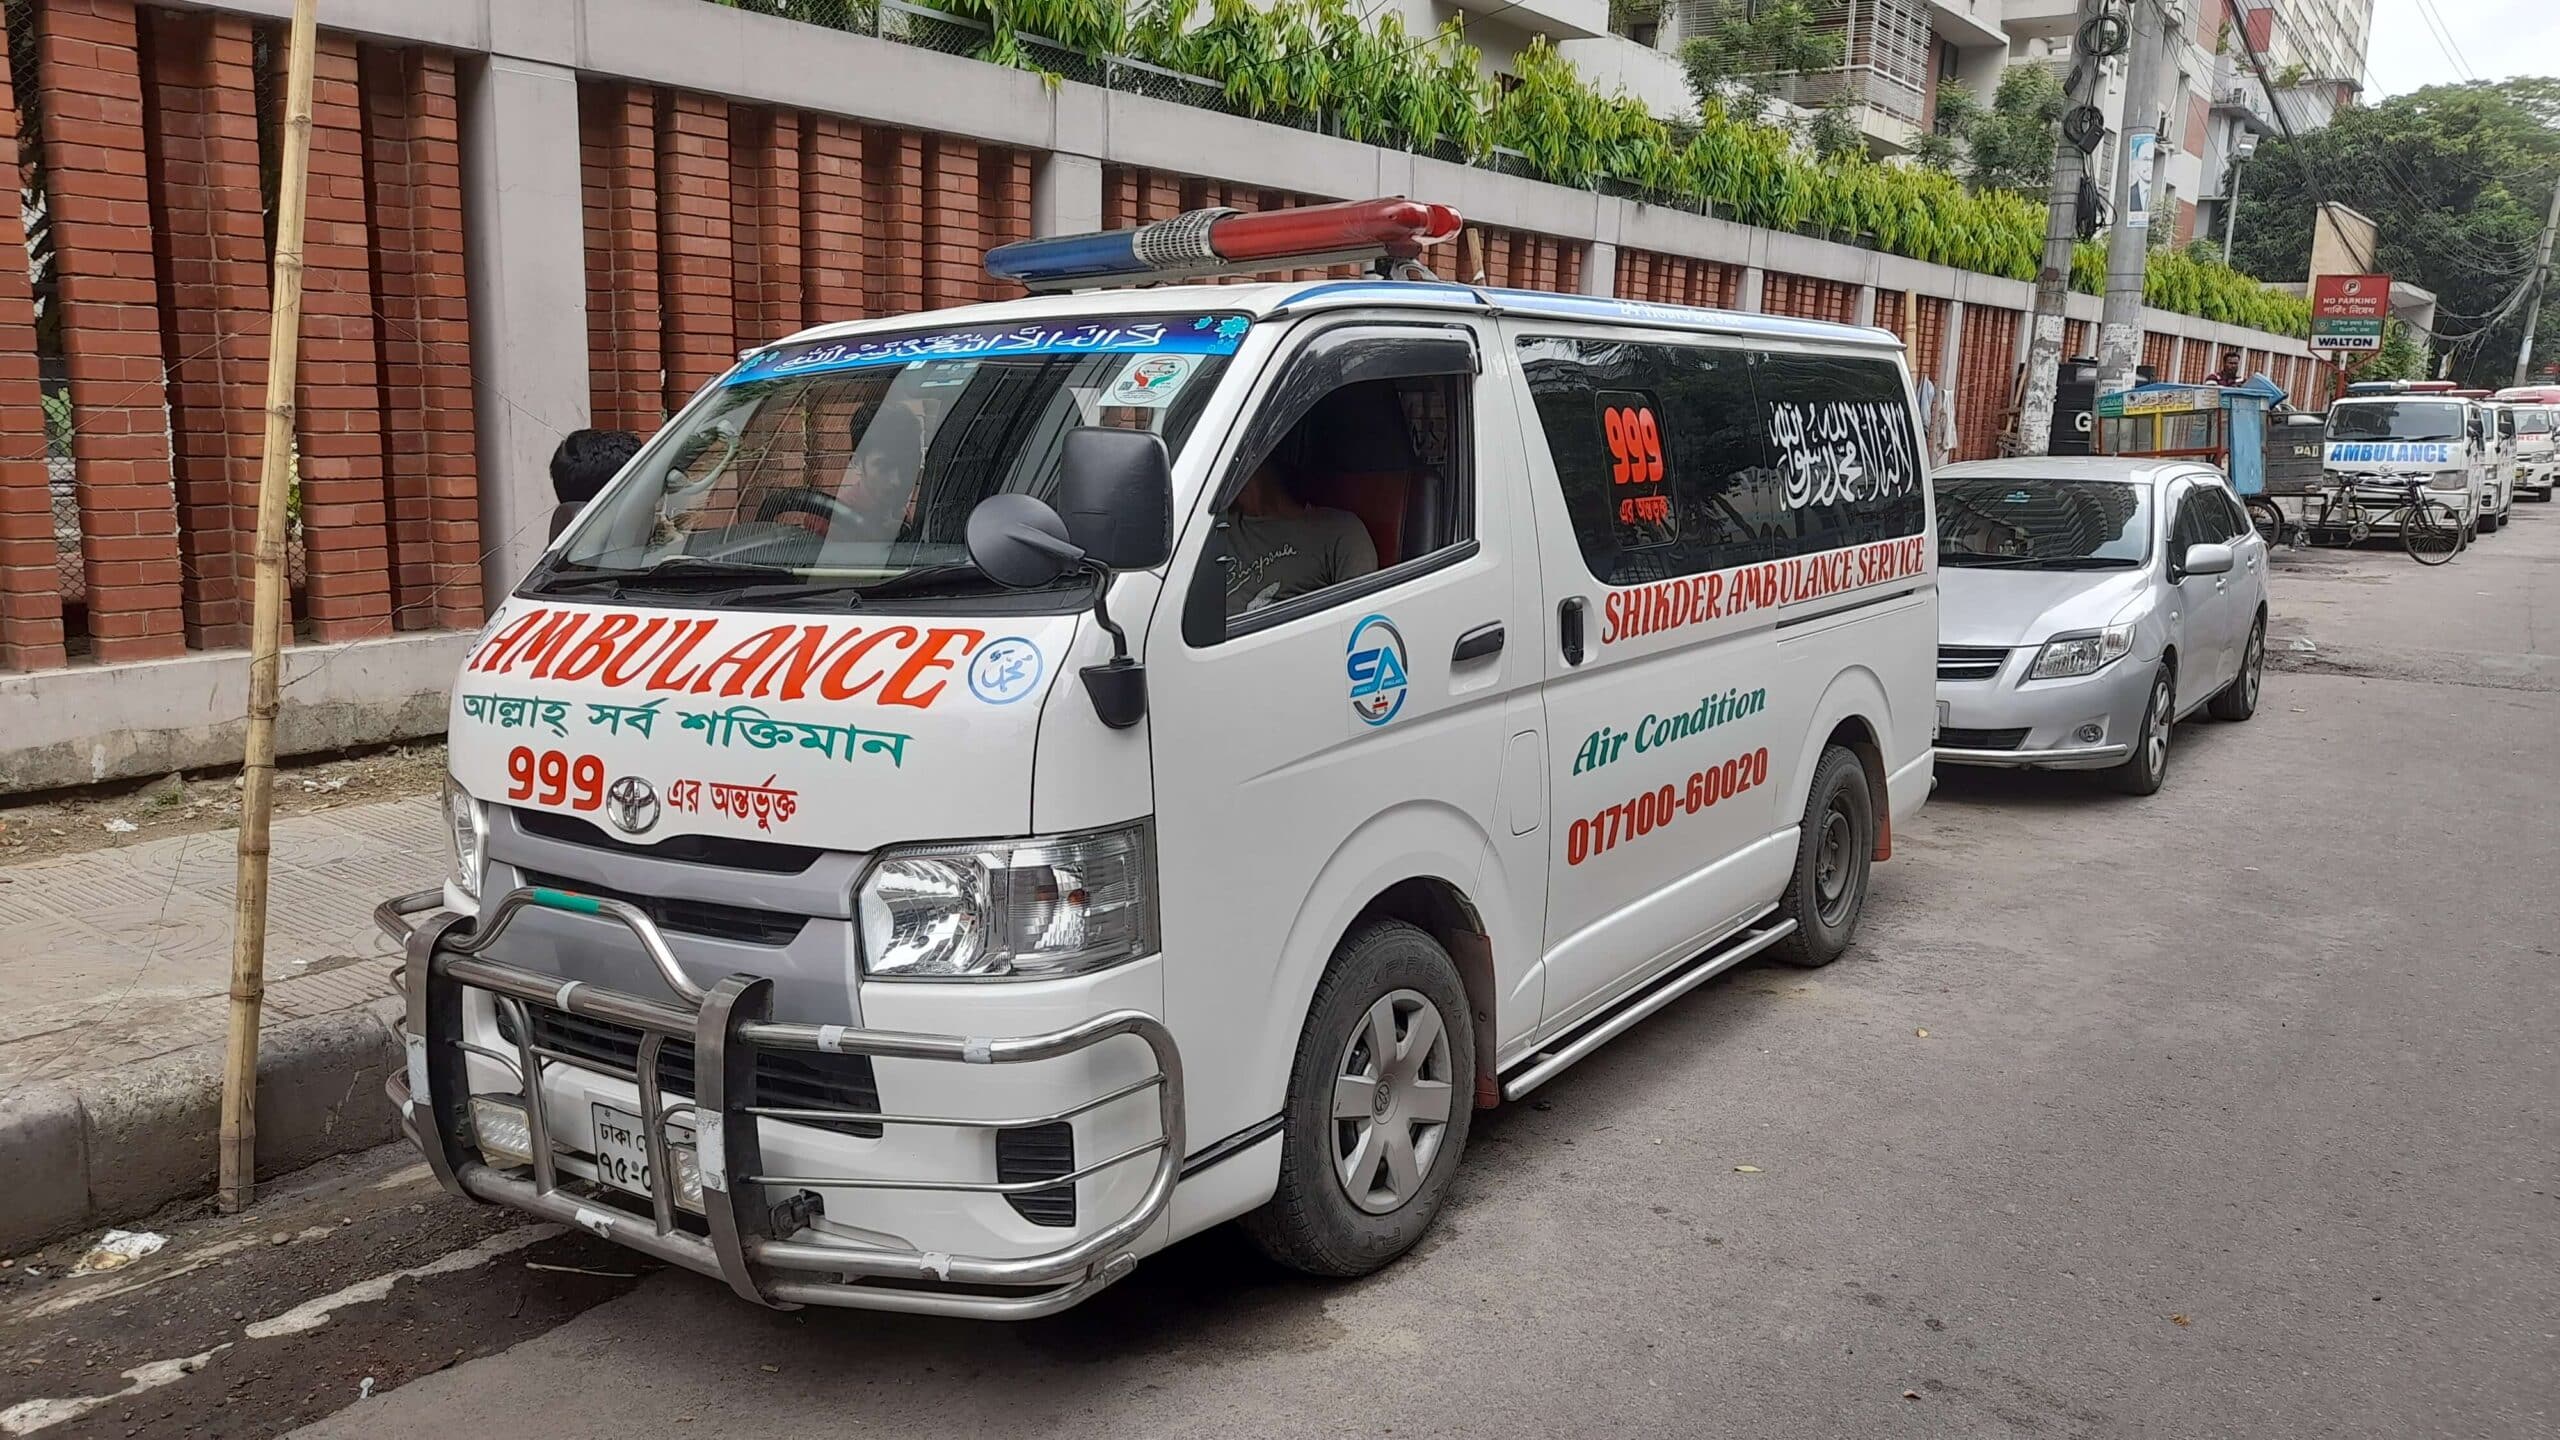 Amin-bazar-ambulance-service